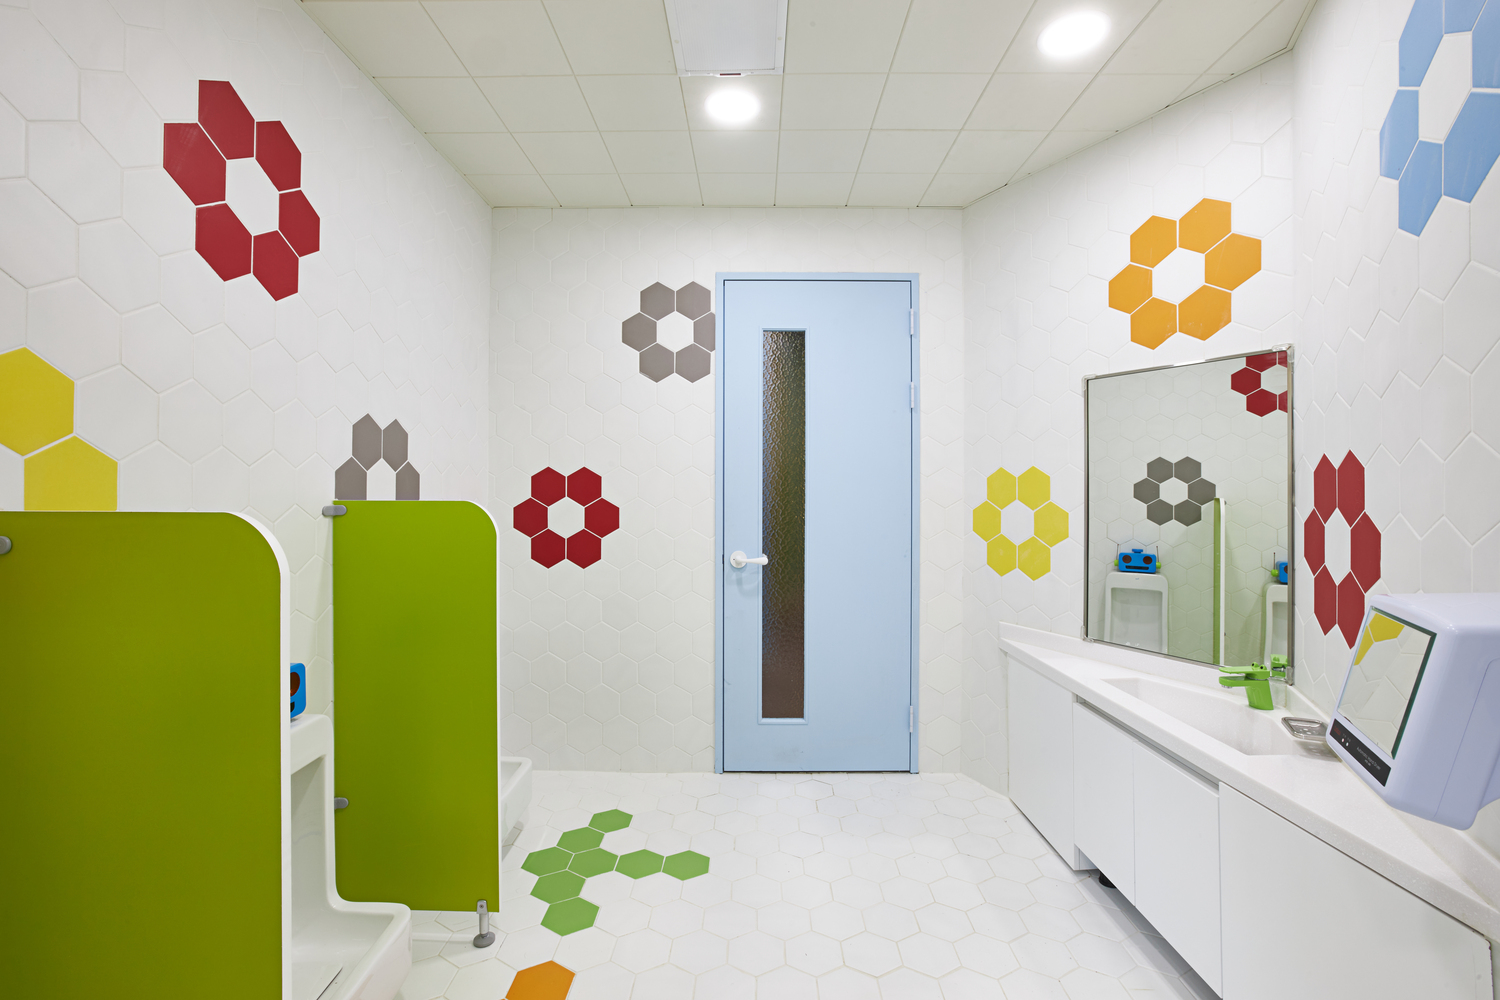 Không gian bên trong các lớp học được thiết kế trực quan sinh động, sắc màu tươi sáng, ngay cả phòng vệ sinh của các bé cũng rất dễ thương.